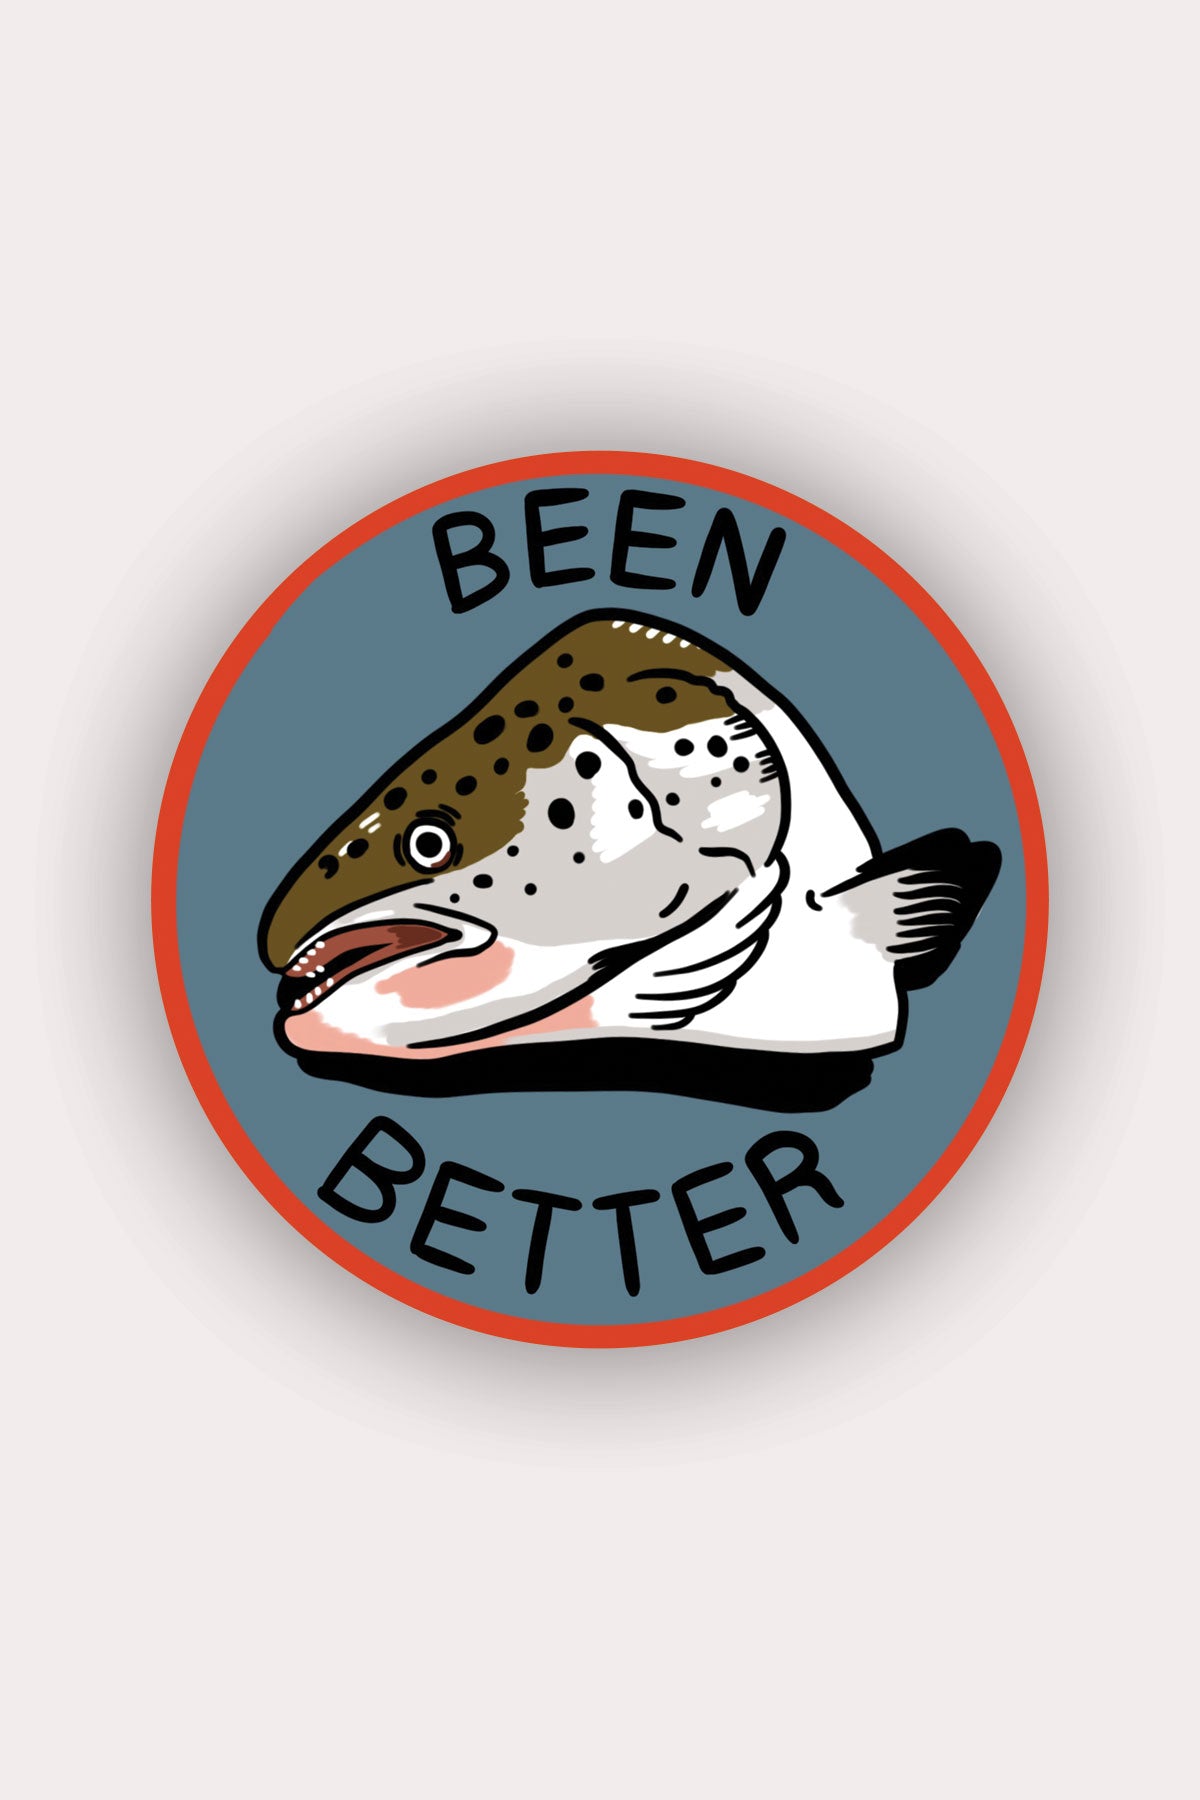 Been Better (Fish) Vinyl Sticker